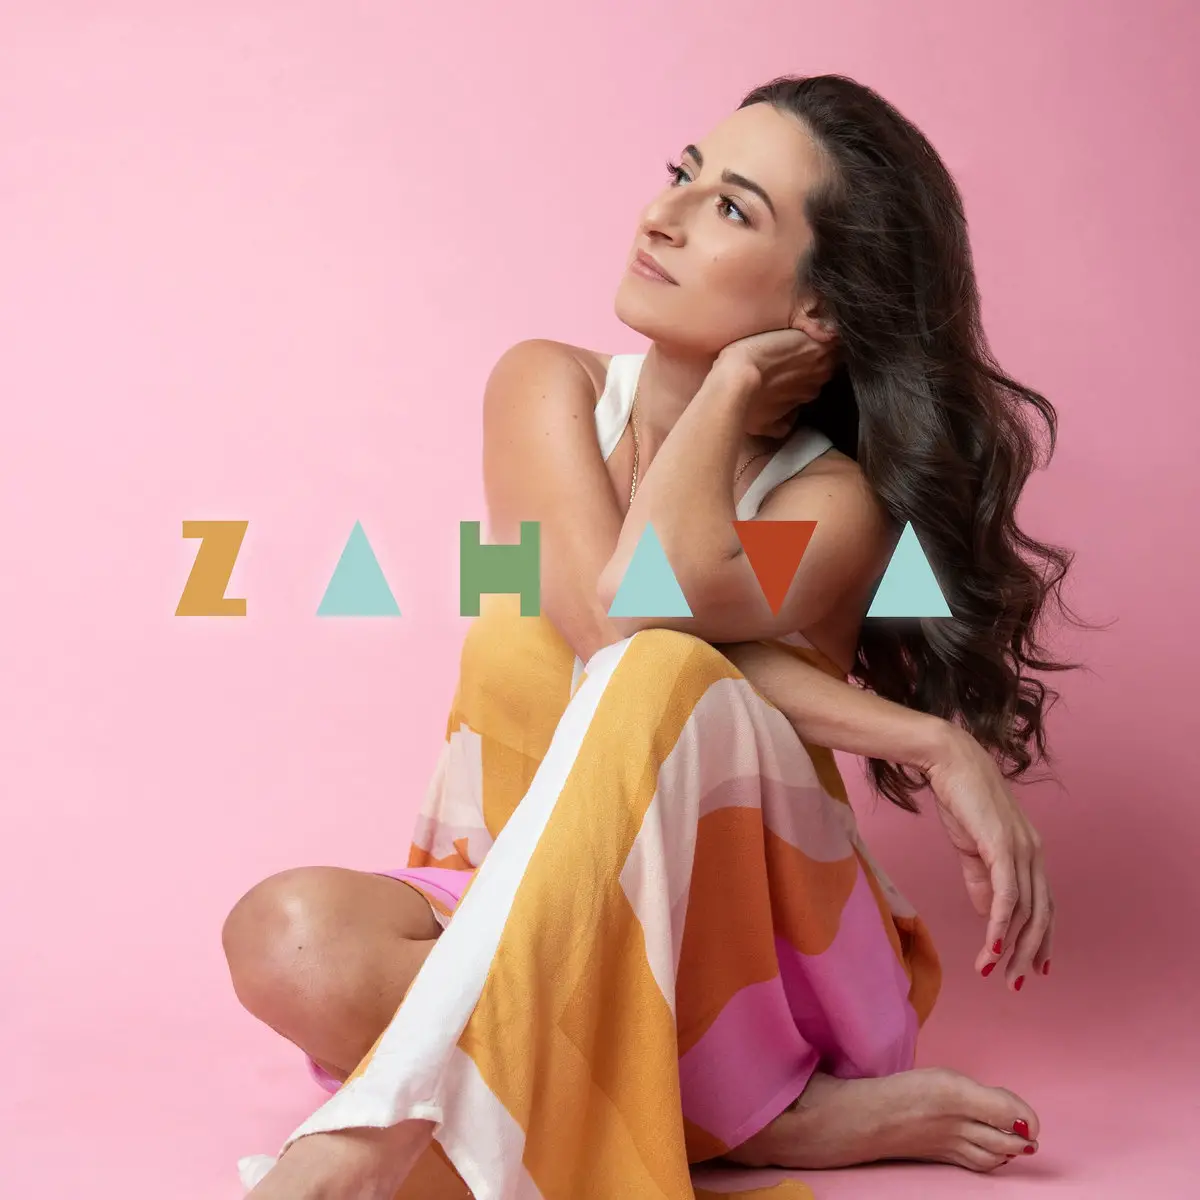 Jordana Talsky - 'Zahava' Reaction | Opinions | LIVING LIFE FEARLESS